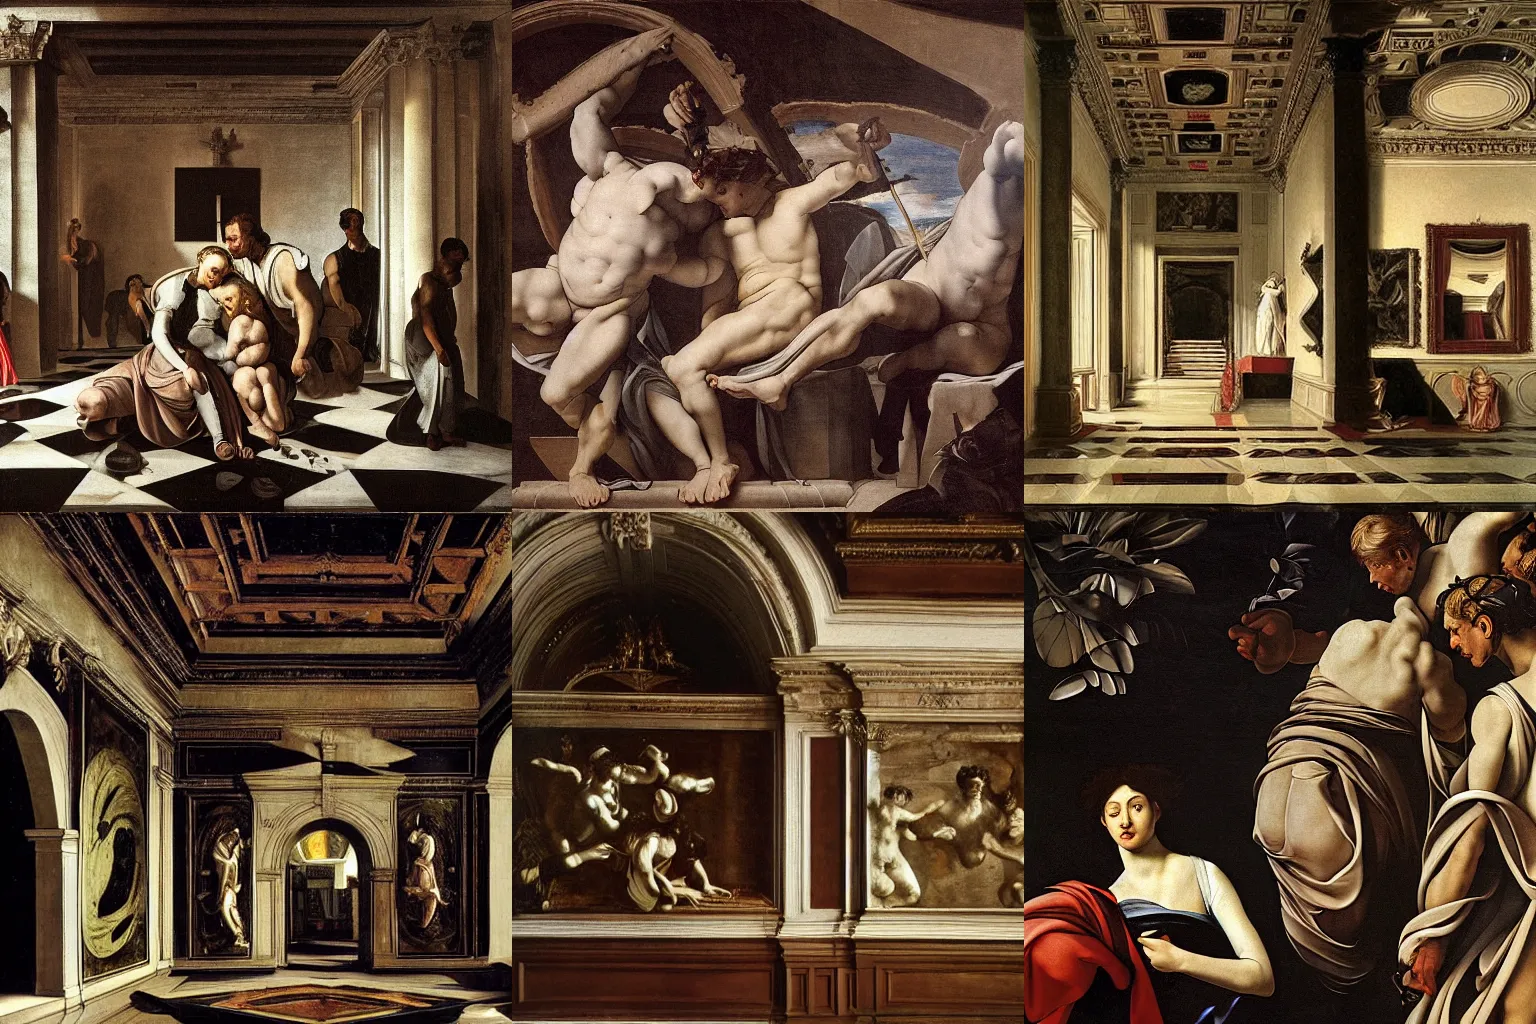 Prompt: high detail mansion by Michelangelo Merisi da Caravaggio,